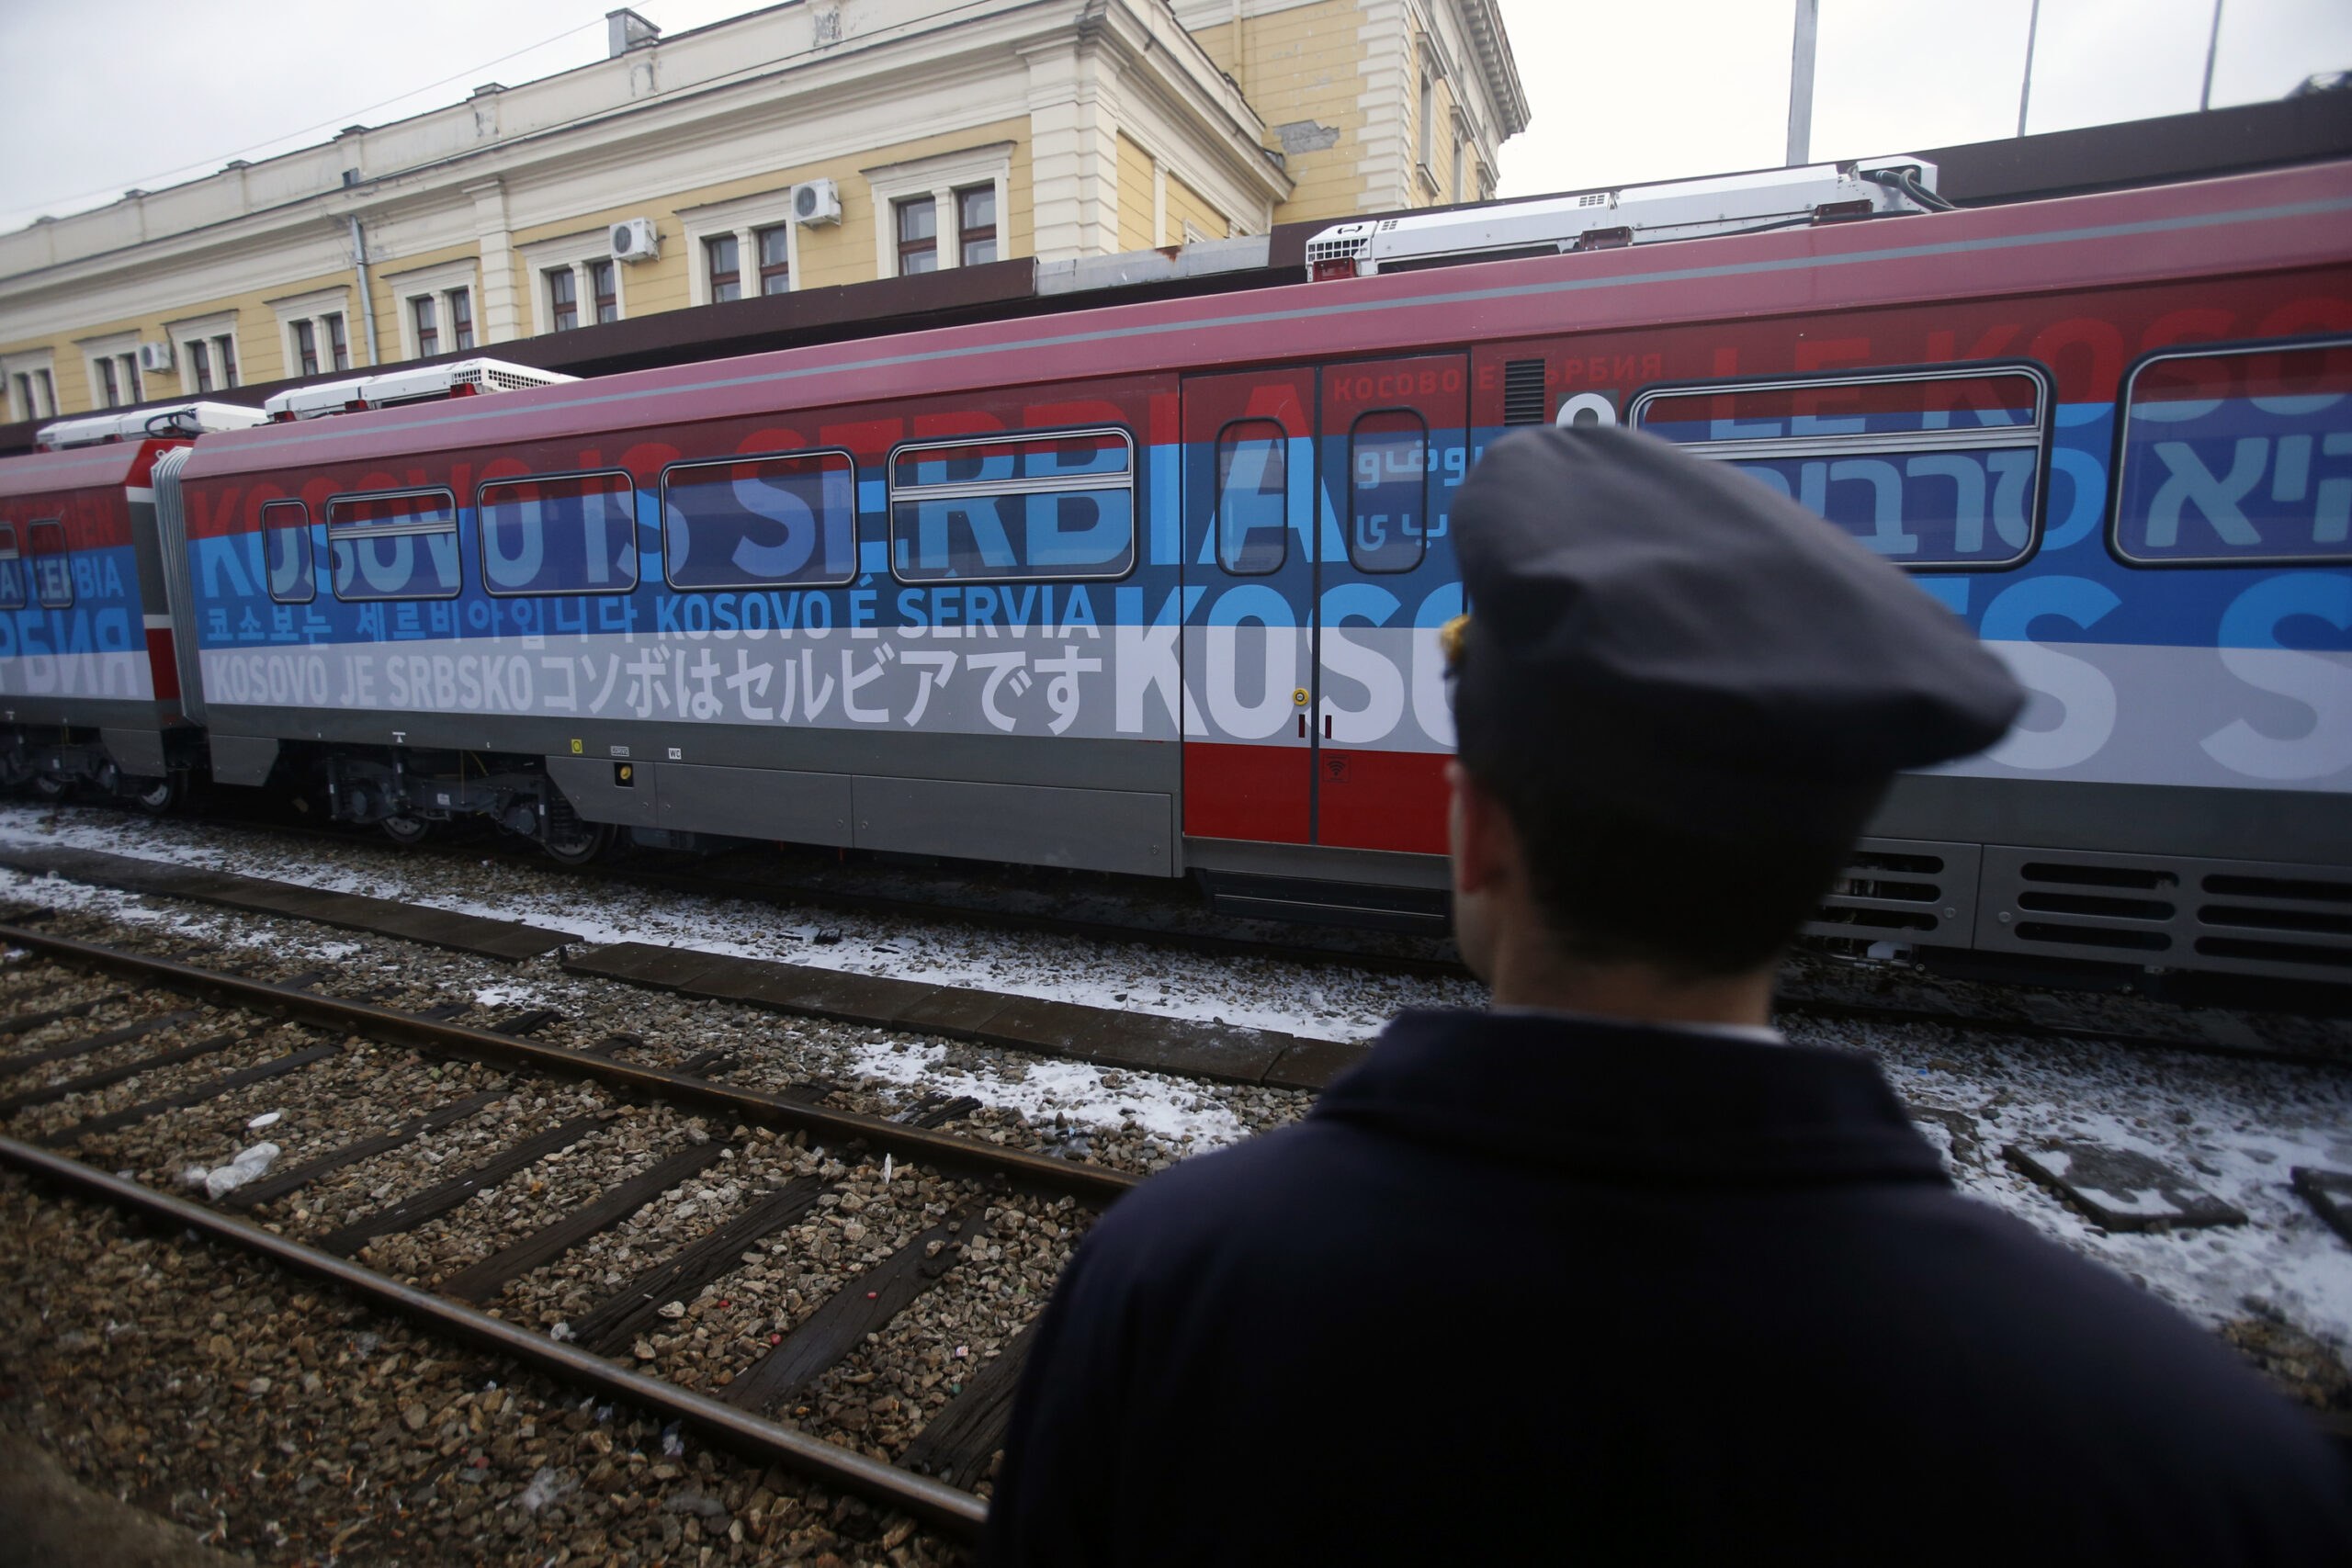 Τρένο έκοψε στα δύο λεωφορείο που μετέφερε παιδιά στη Σερβία